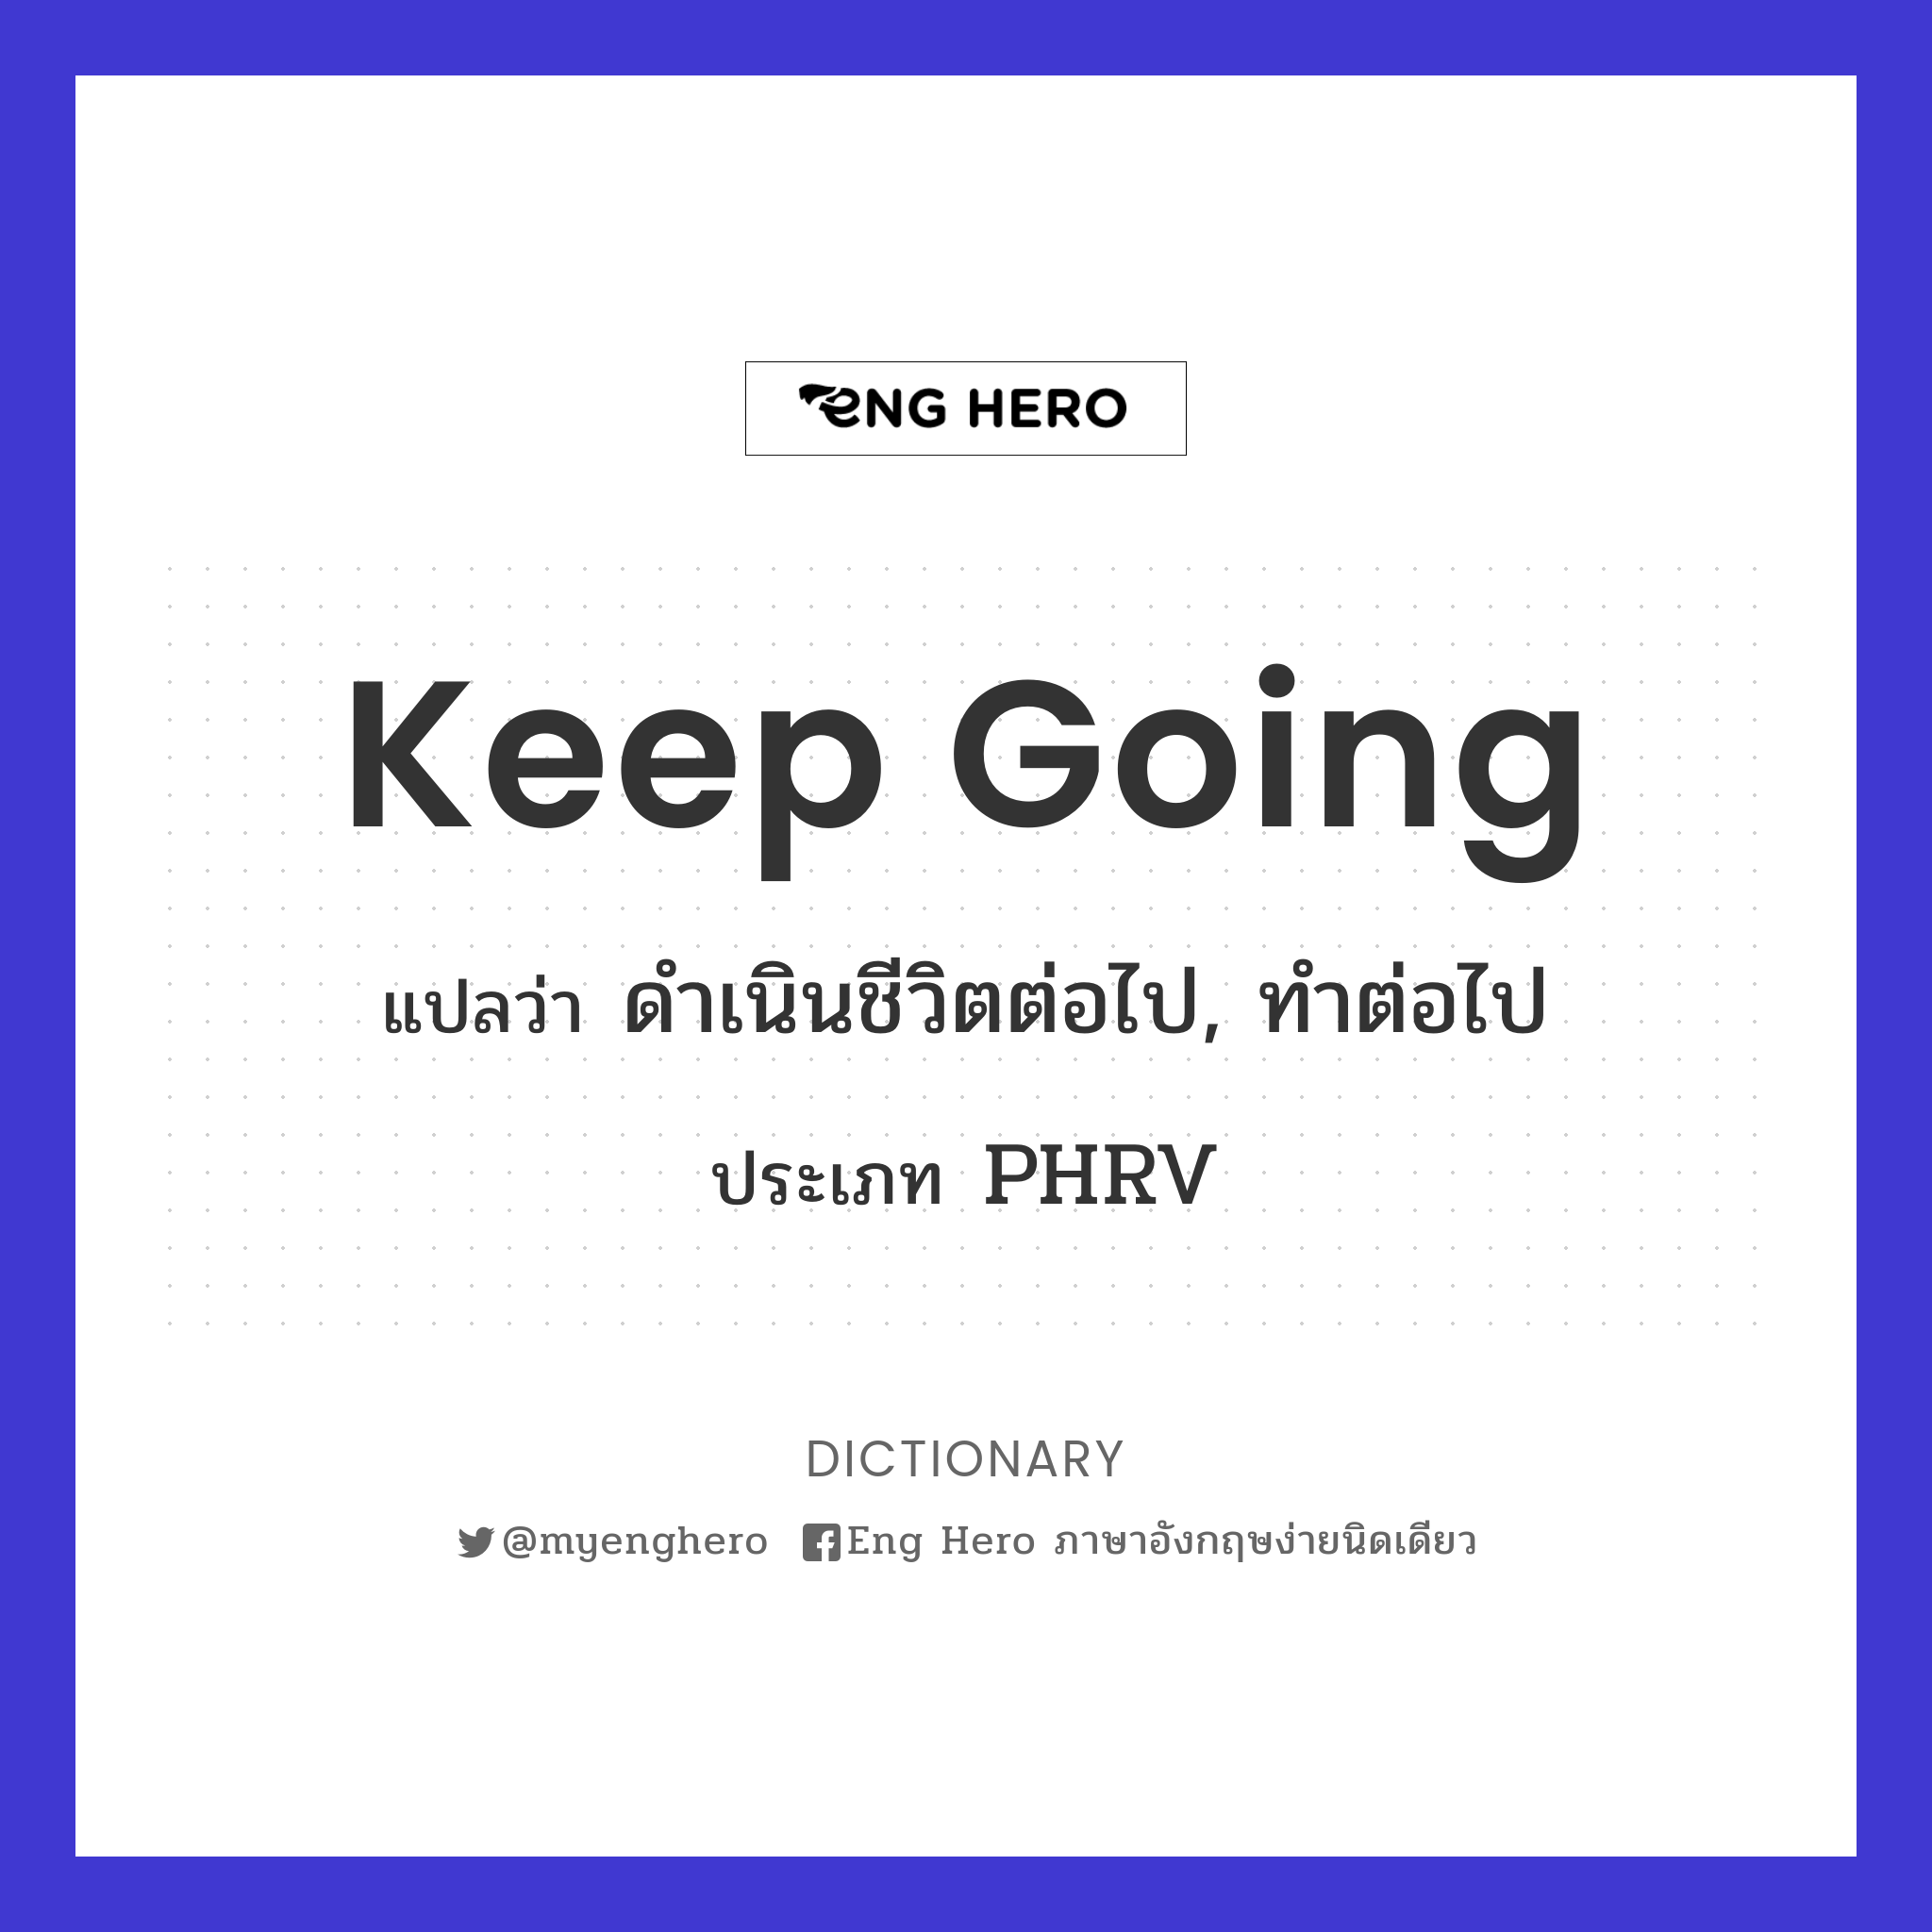 Keep Going แปลว่า ดำเนินชีวิตต่อไป, ทำต่อไป | Eng Hero เรียนภาษาอังกฤษ  ออนไลน์ ฟรี